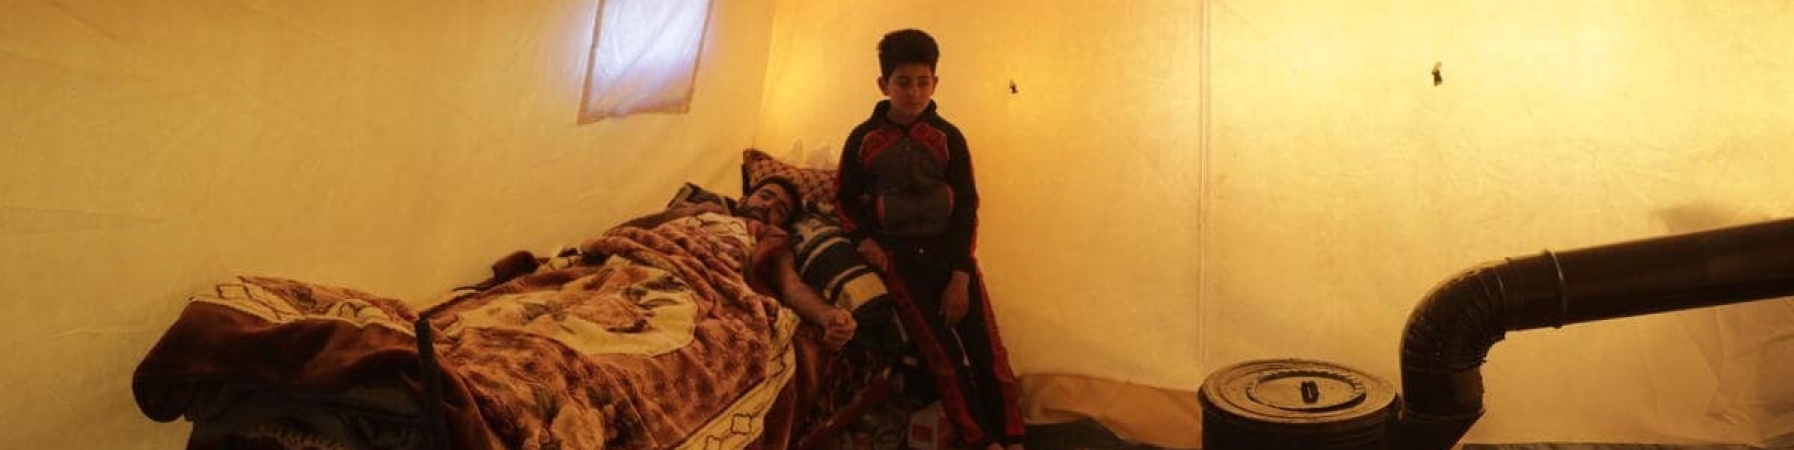 bambino sul letto con il padre in un rifugio dopo il terremoto in turchia e siria